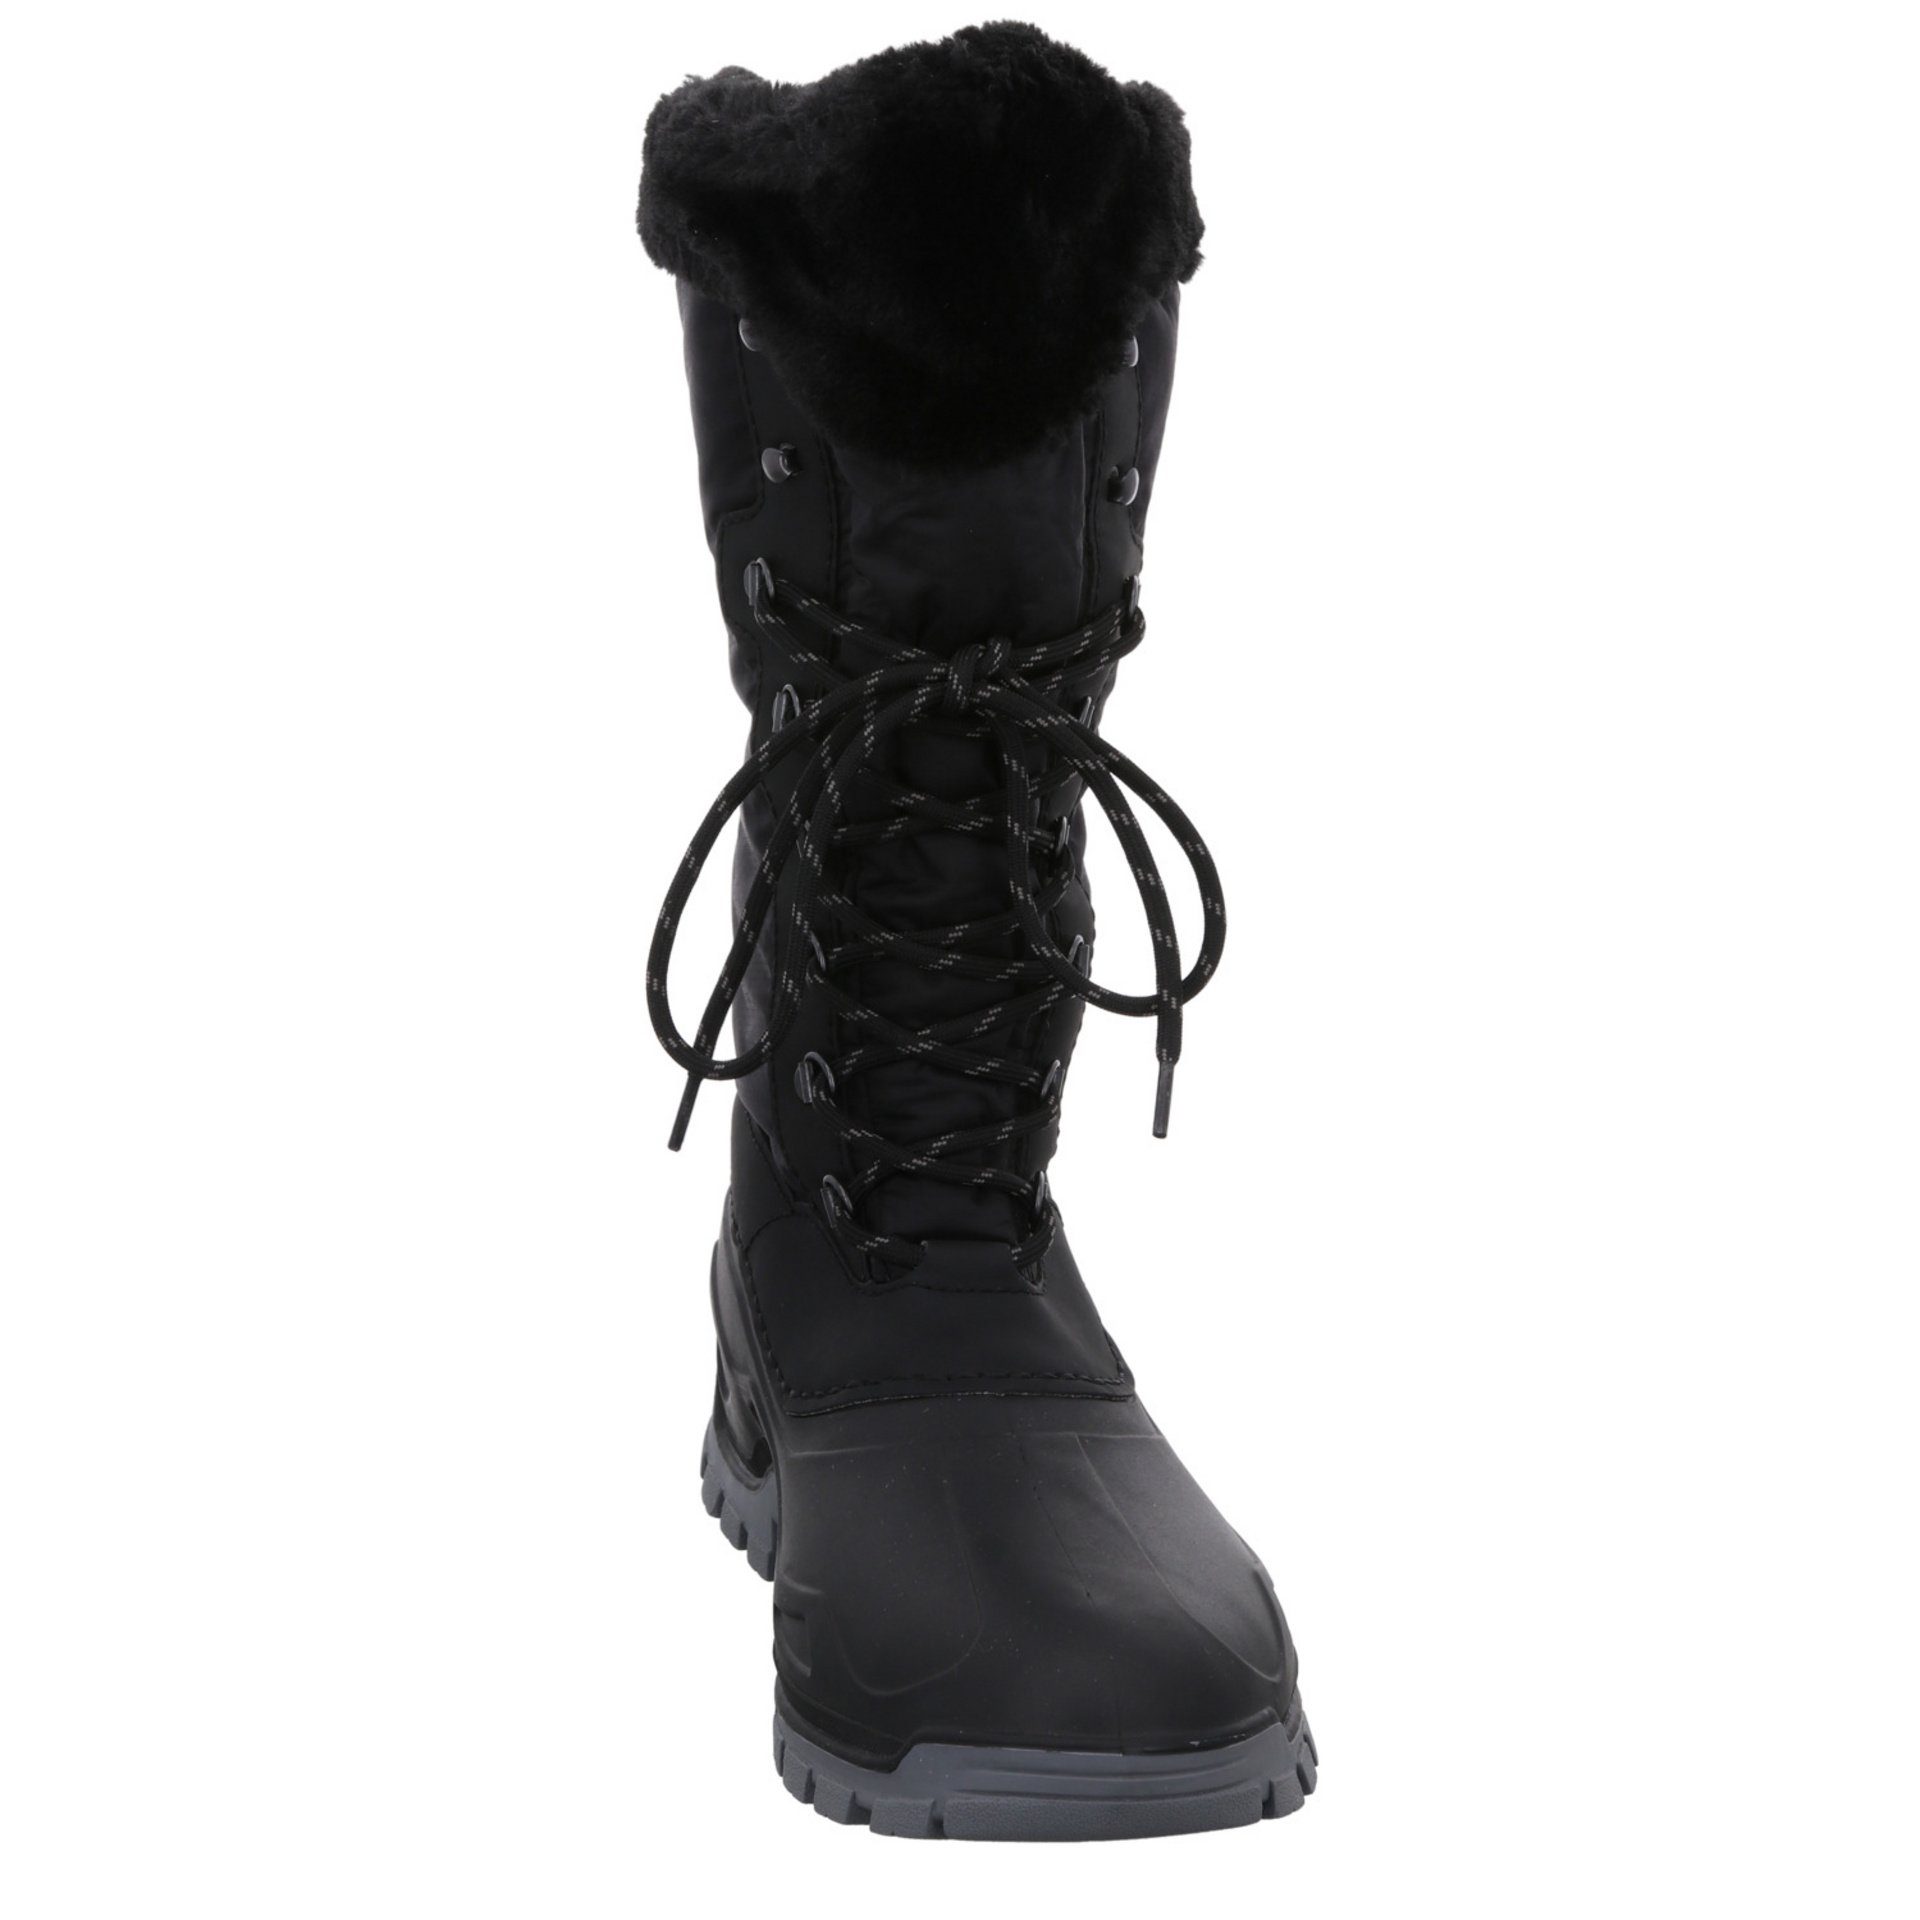 Damen Winter Boots Synthetikkombination Schuhe Snowboots Rieker Snowboots Freizeit schwarz/schwarz/nero